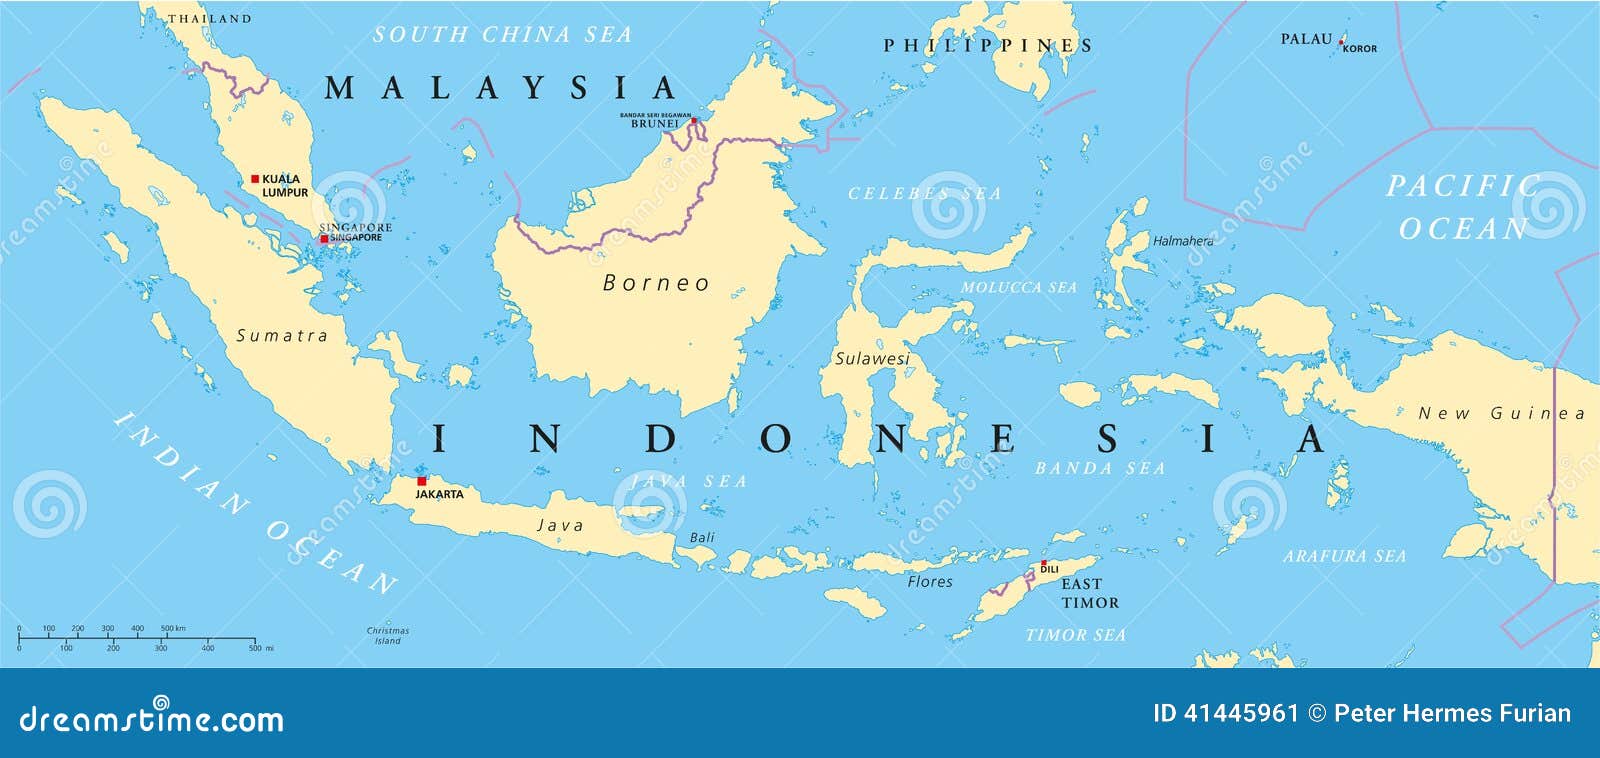 Малайзия политическая. Малайзия и Индонезия на карте. Бали на карте. Джакарта-остров Бали в Индонезии на карте.